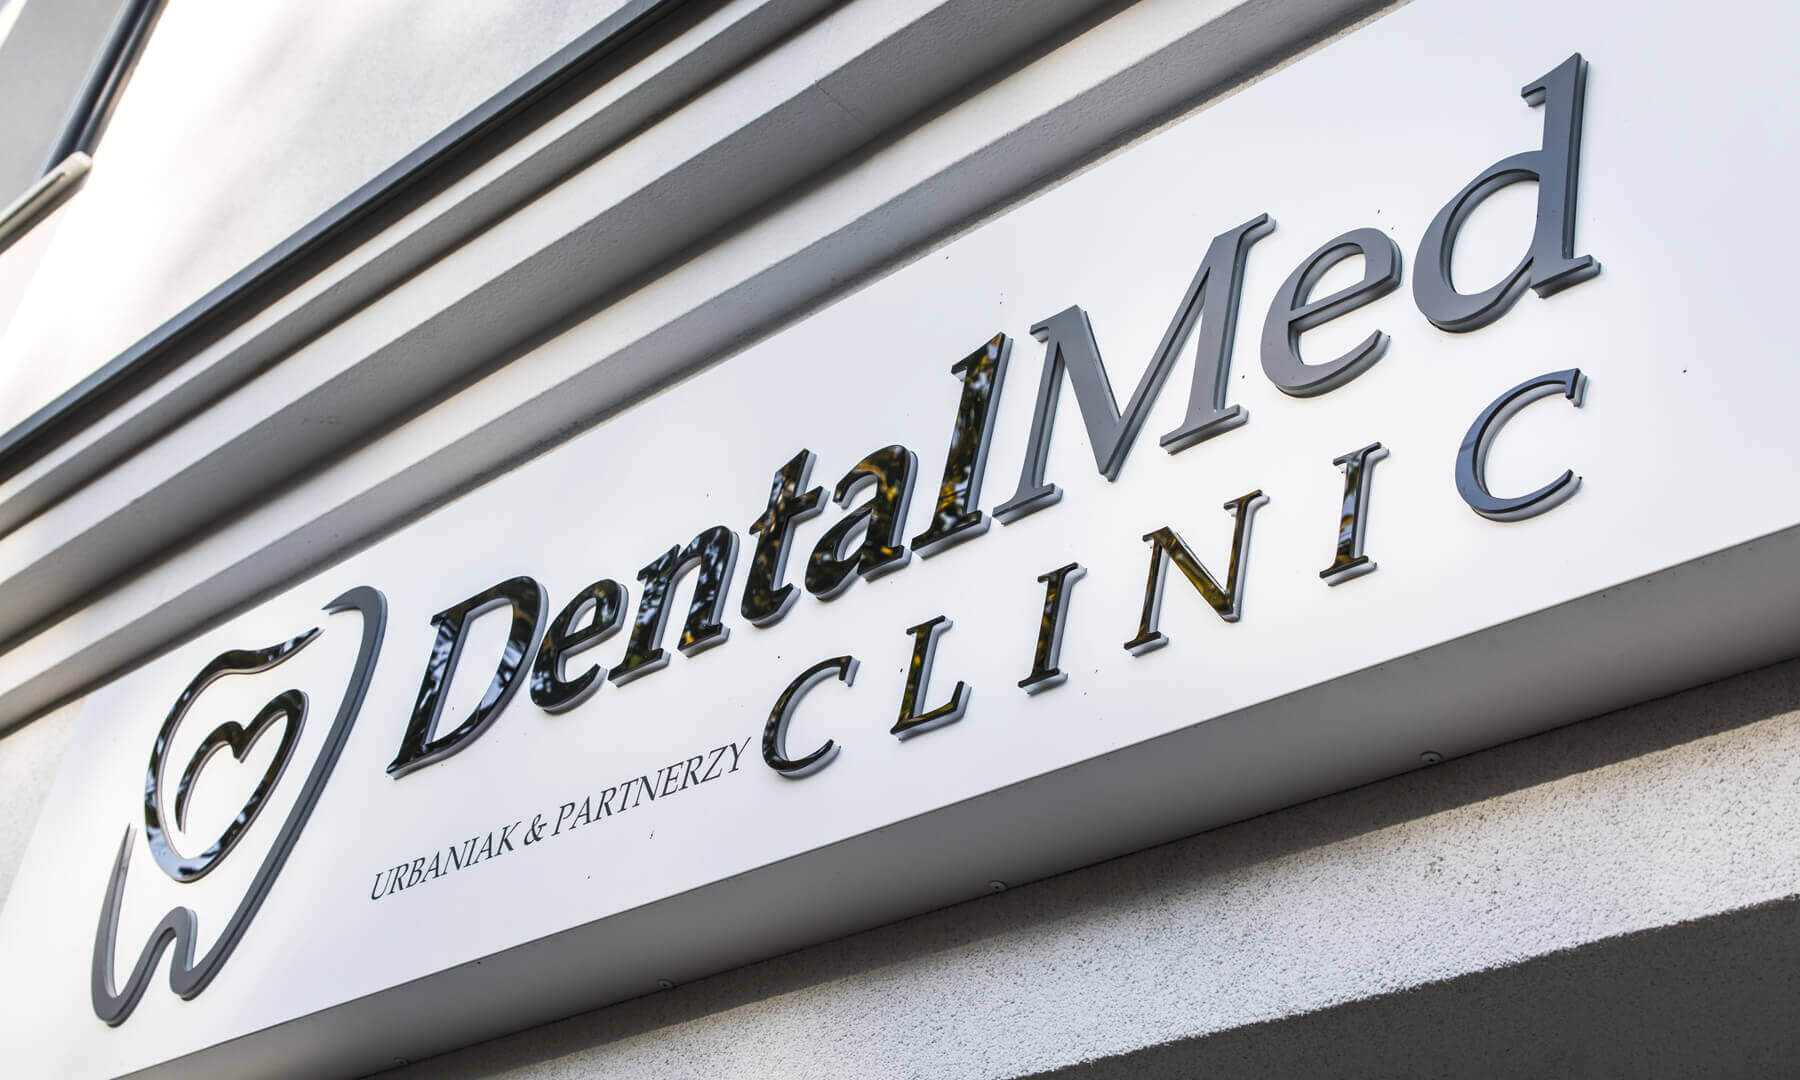 DentalMed - DentalMed - spatial letters on the advertising coffer above the entrance